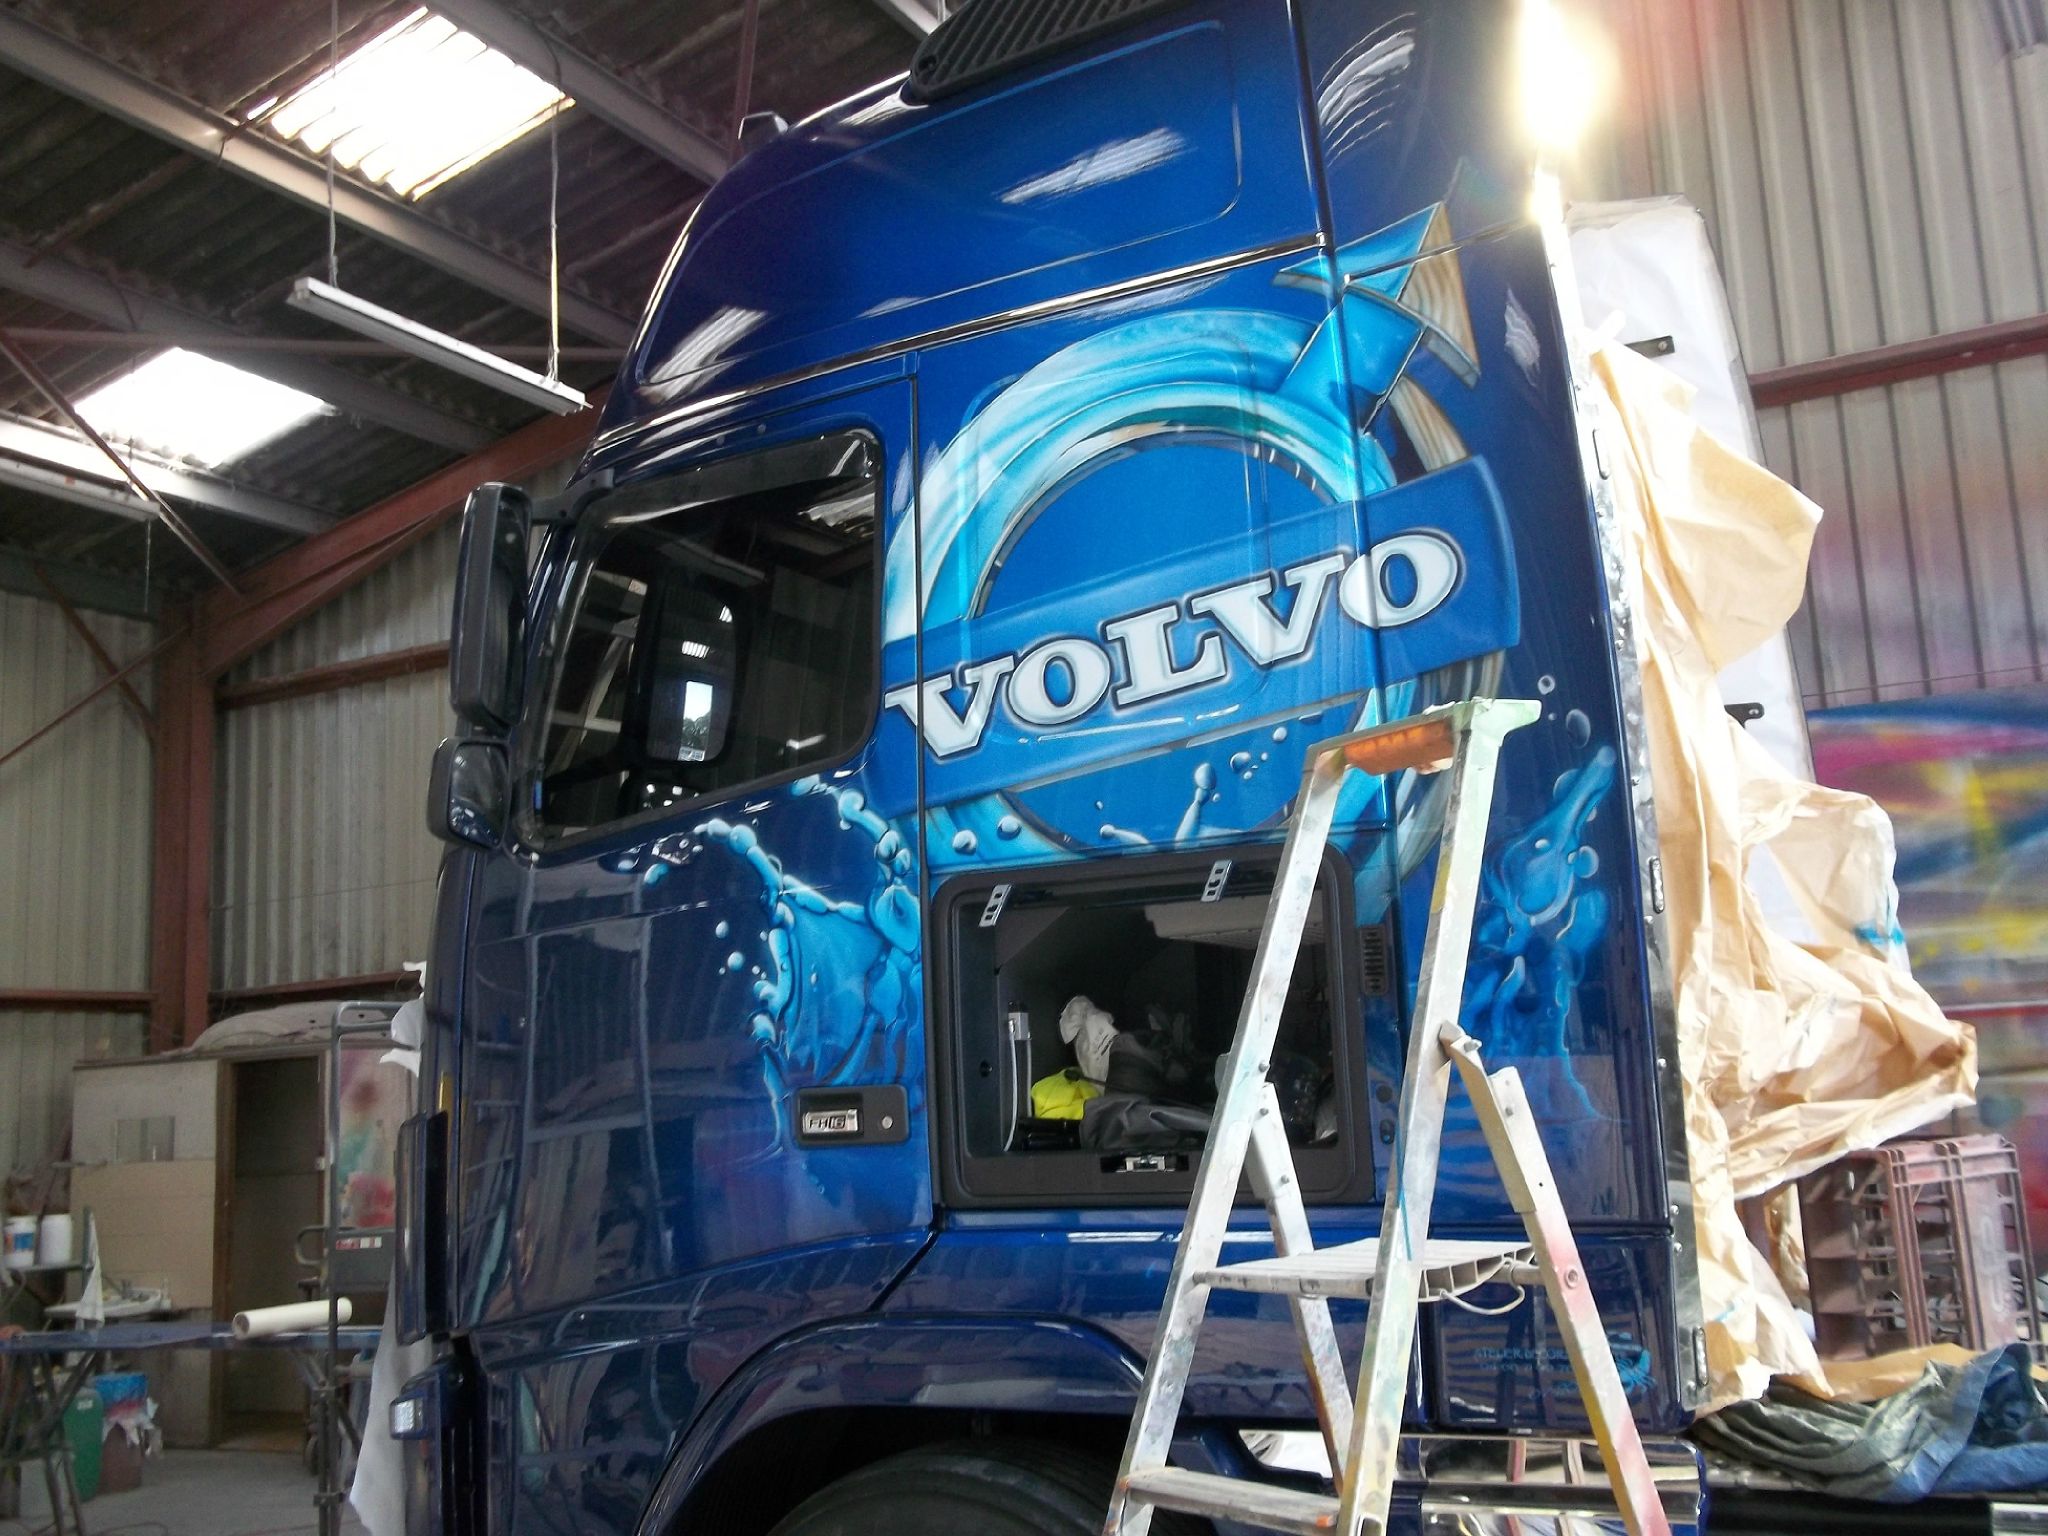 Réalisation : Une peinture neuve pour un camion Volvo - JC Rener